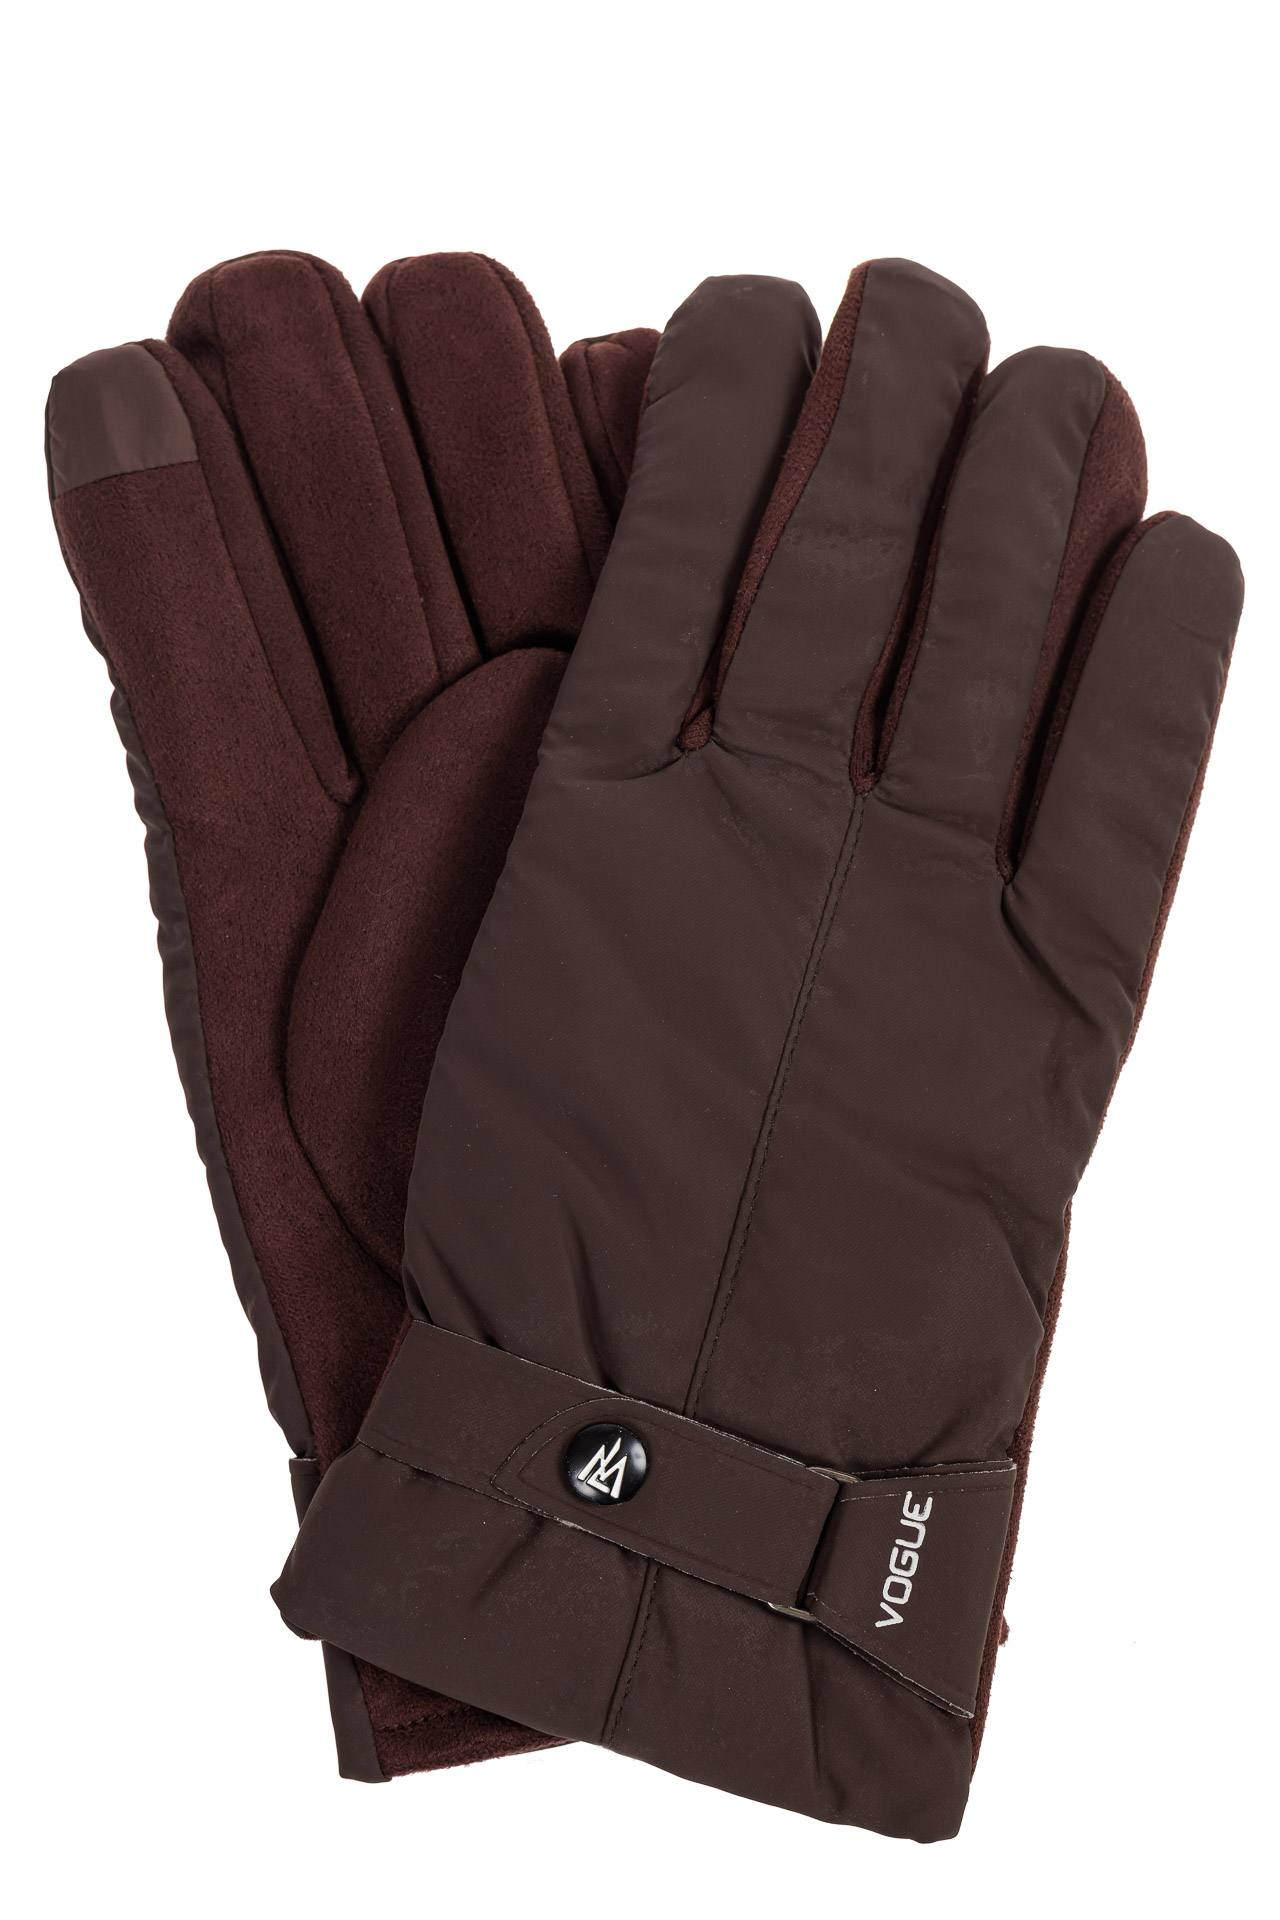 Утепленные перчатки мужские с хлястиком, цвет коричневый